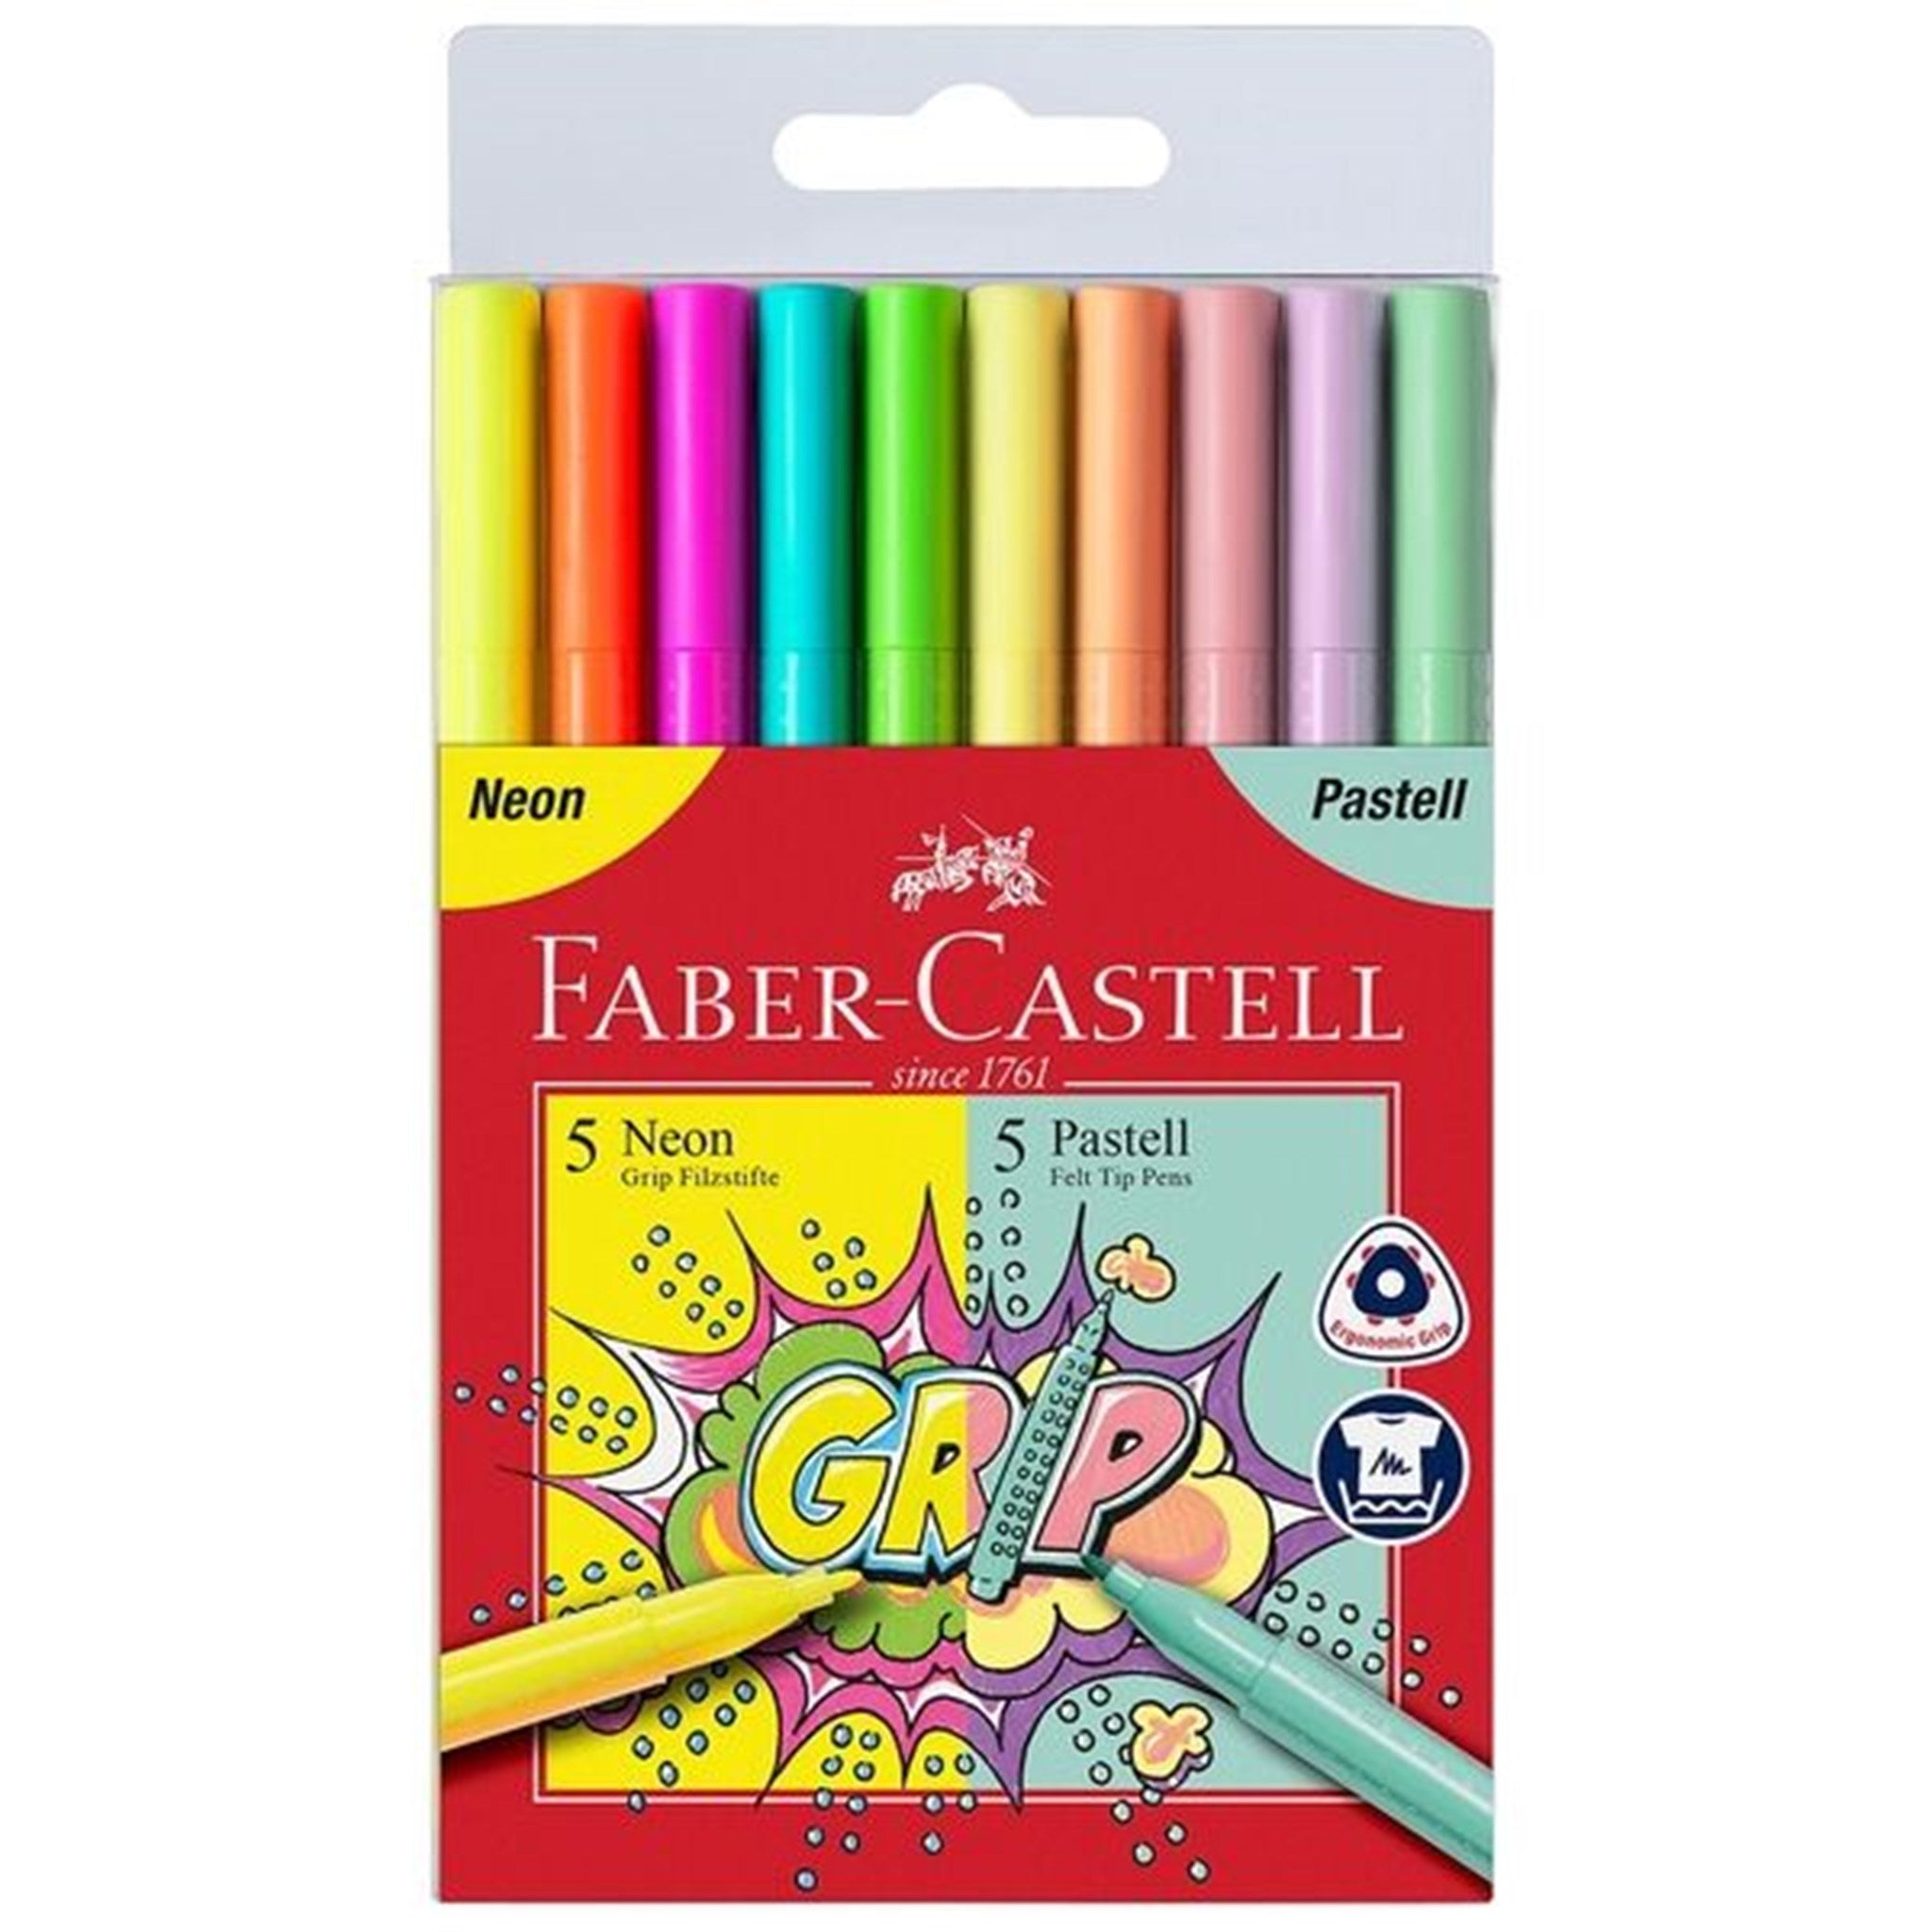 Faber Castell Grip 10 Tusser Pastel & Neon